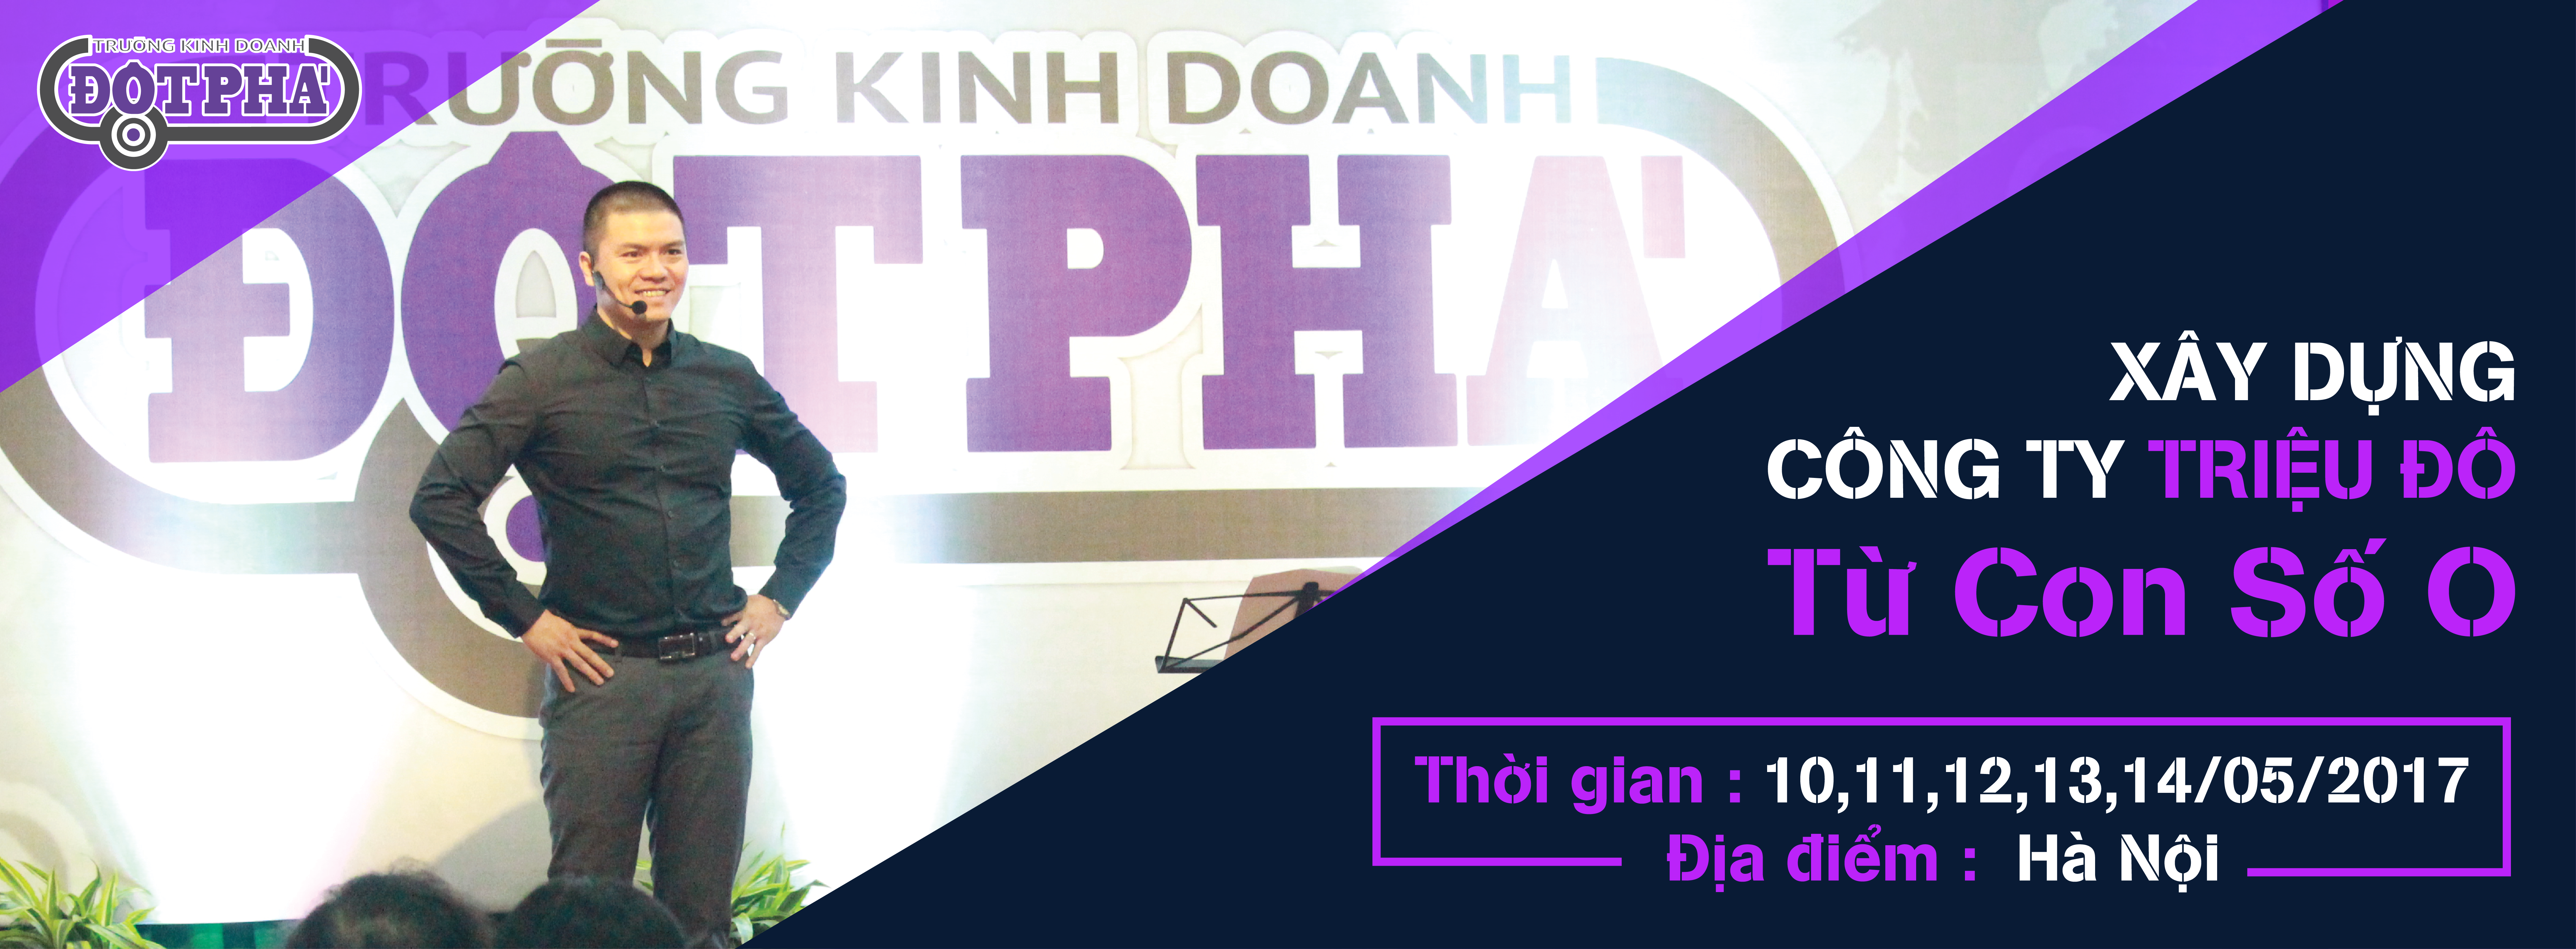 Thông báo địa điểm tổ chức khóa học “TRƯỜNG KINH DOANH ĐỘT PHÁ” tháng 5 tại Hà Nội